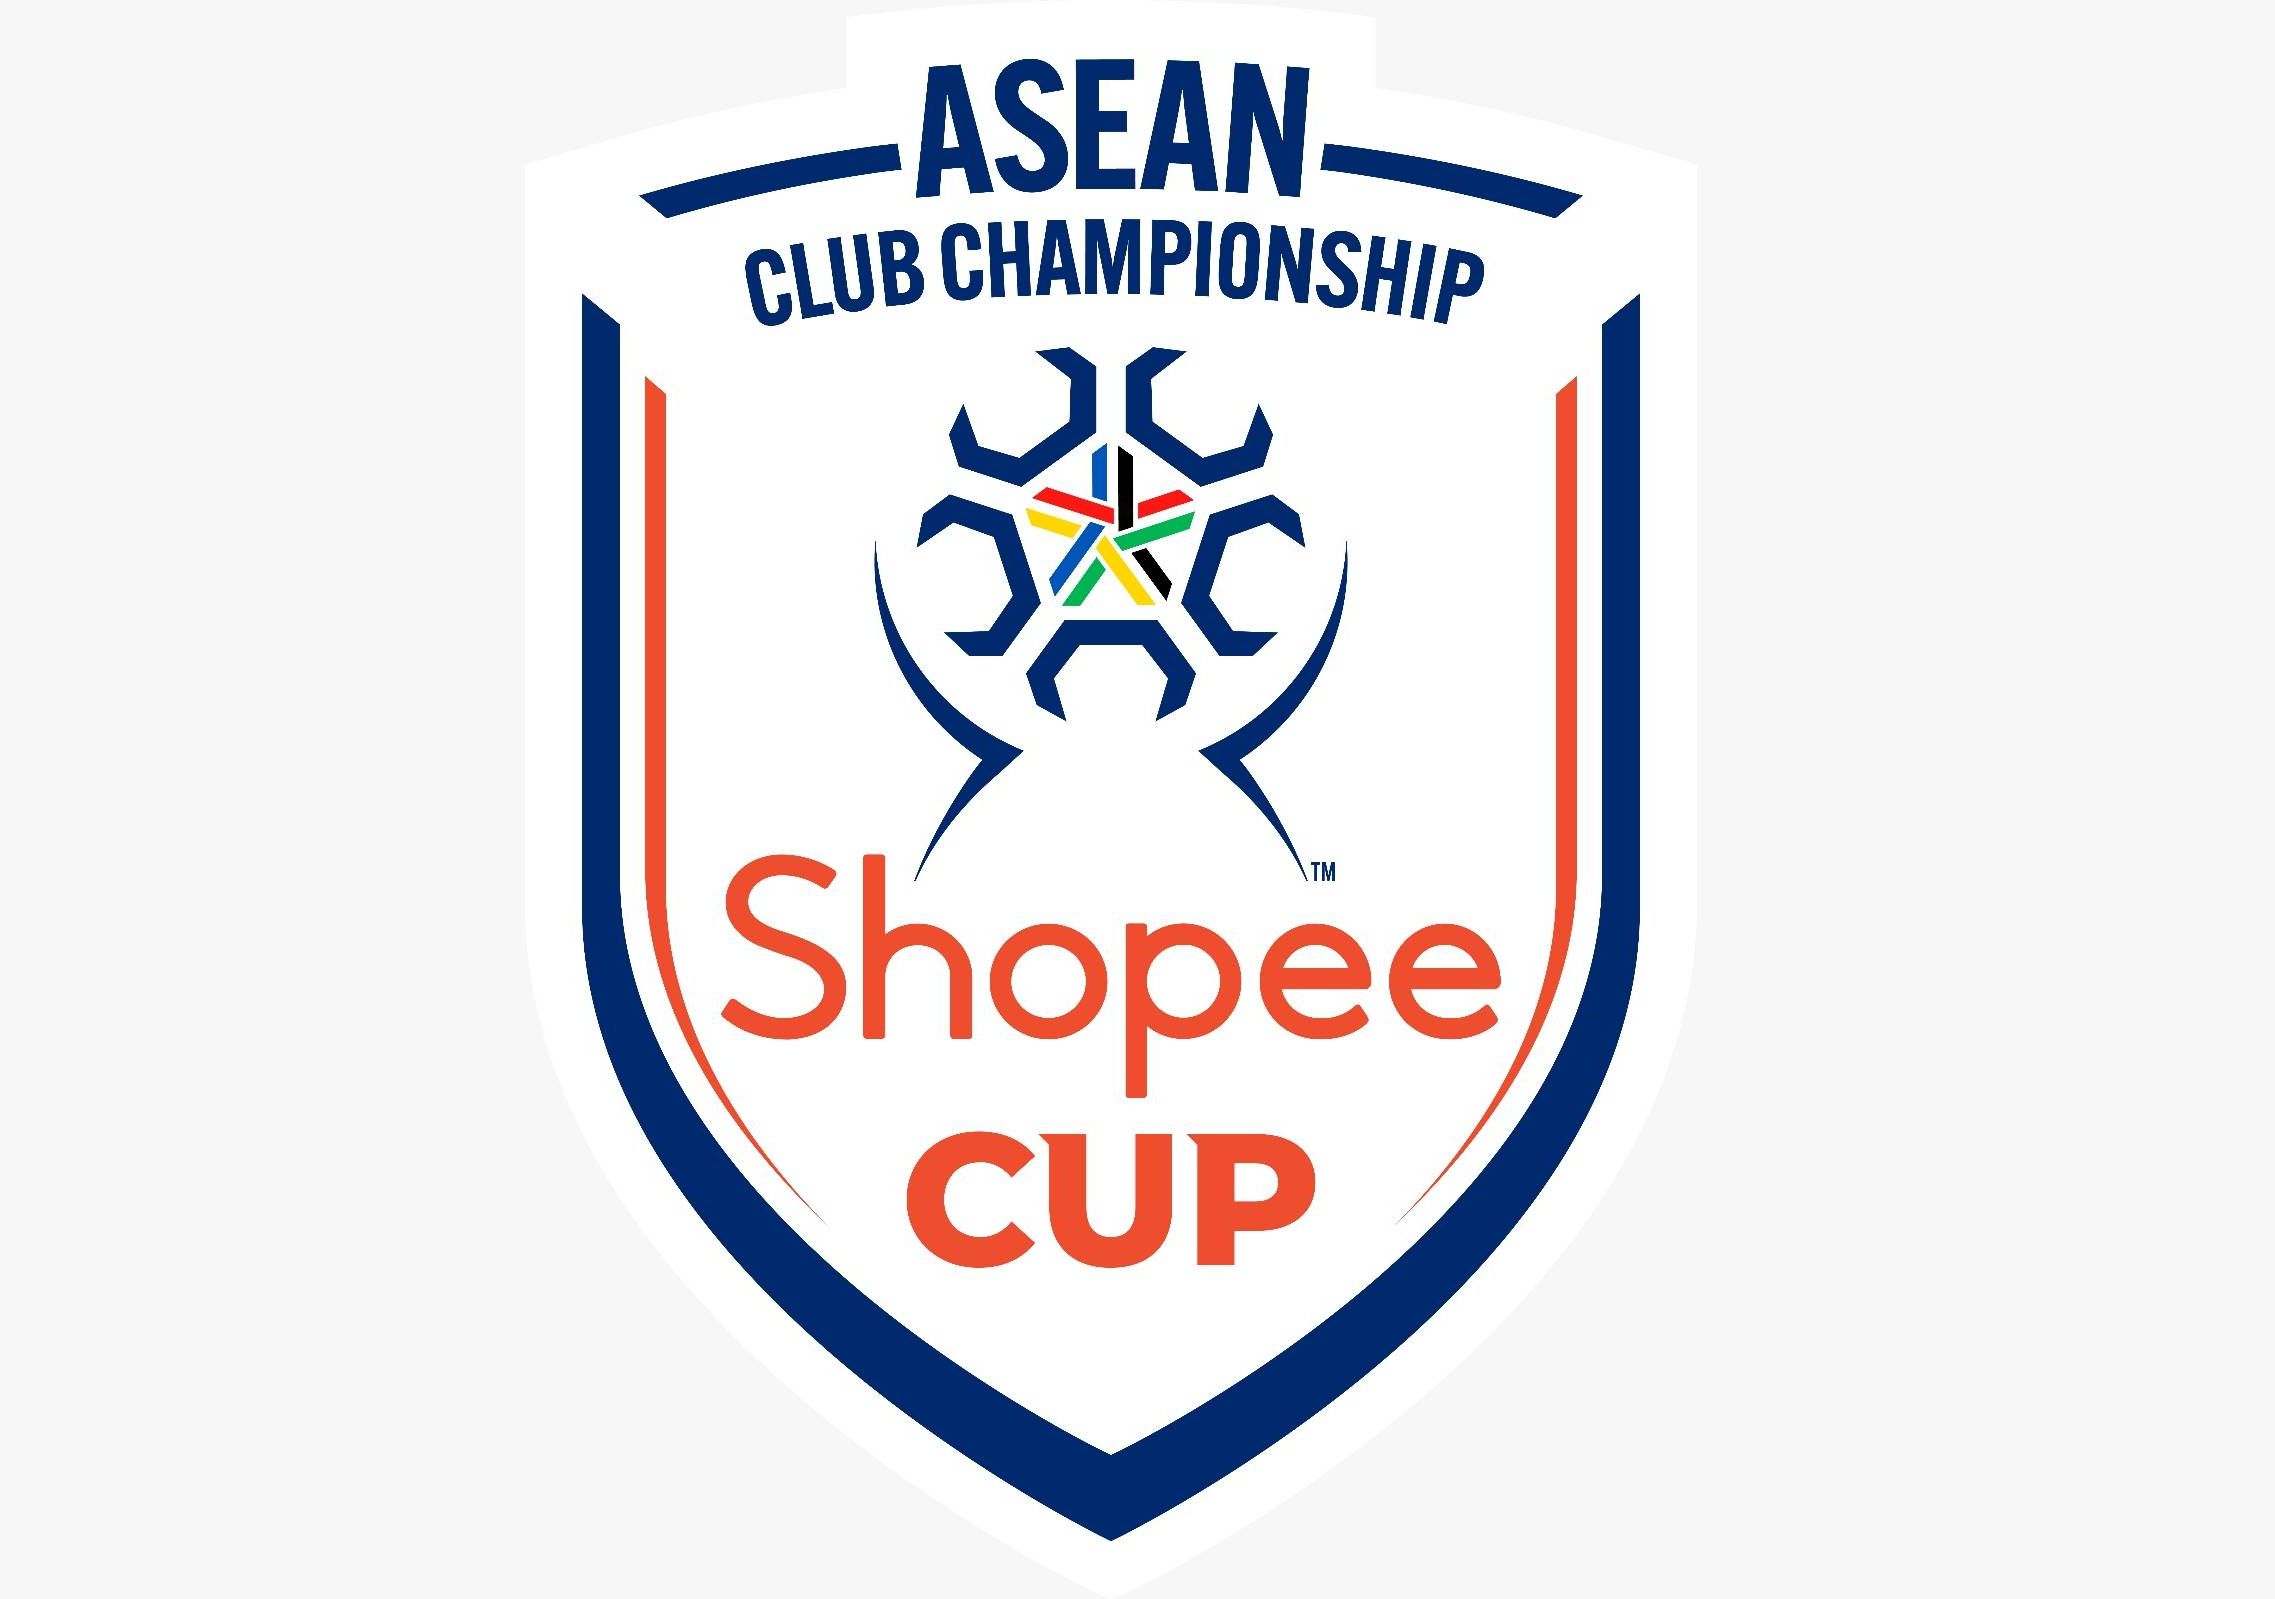 Shopee resmi menjadi mitra resmi Federasi Sepak Bola ASEAN (AFF) dalam gelaran ASEAN Club Championship, yang diberi nama Shopee Cup™.